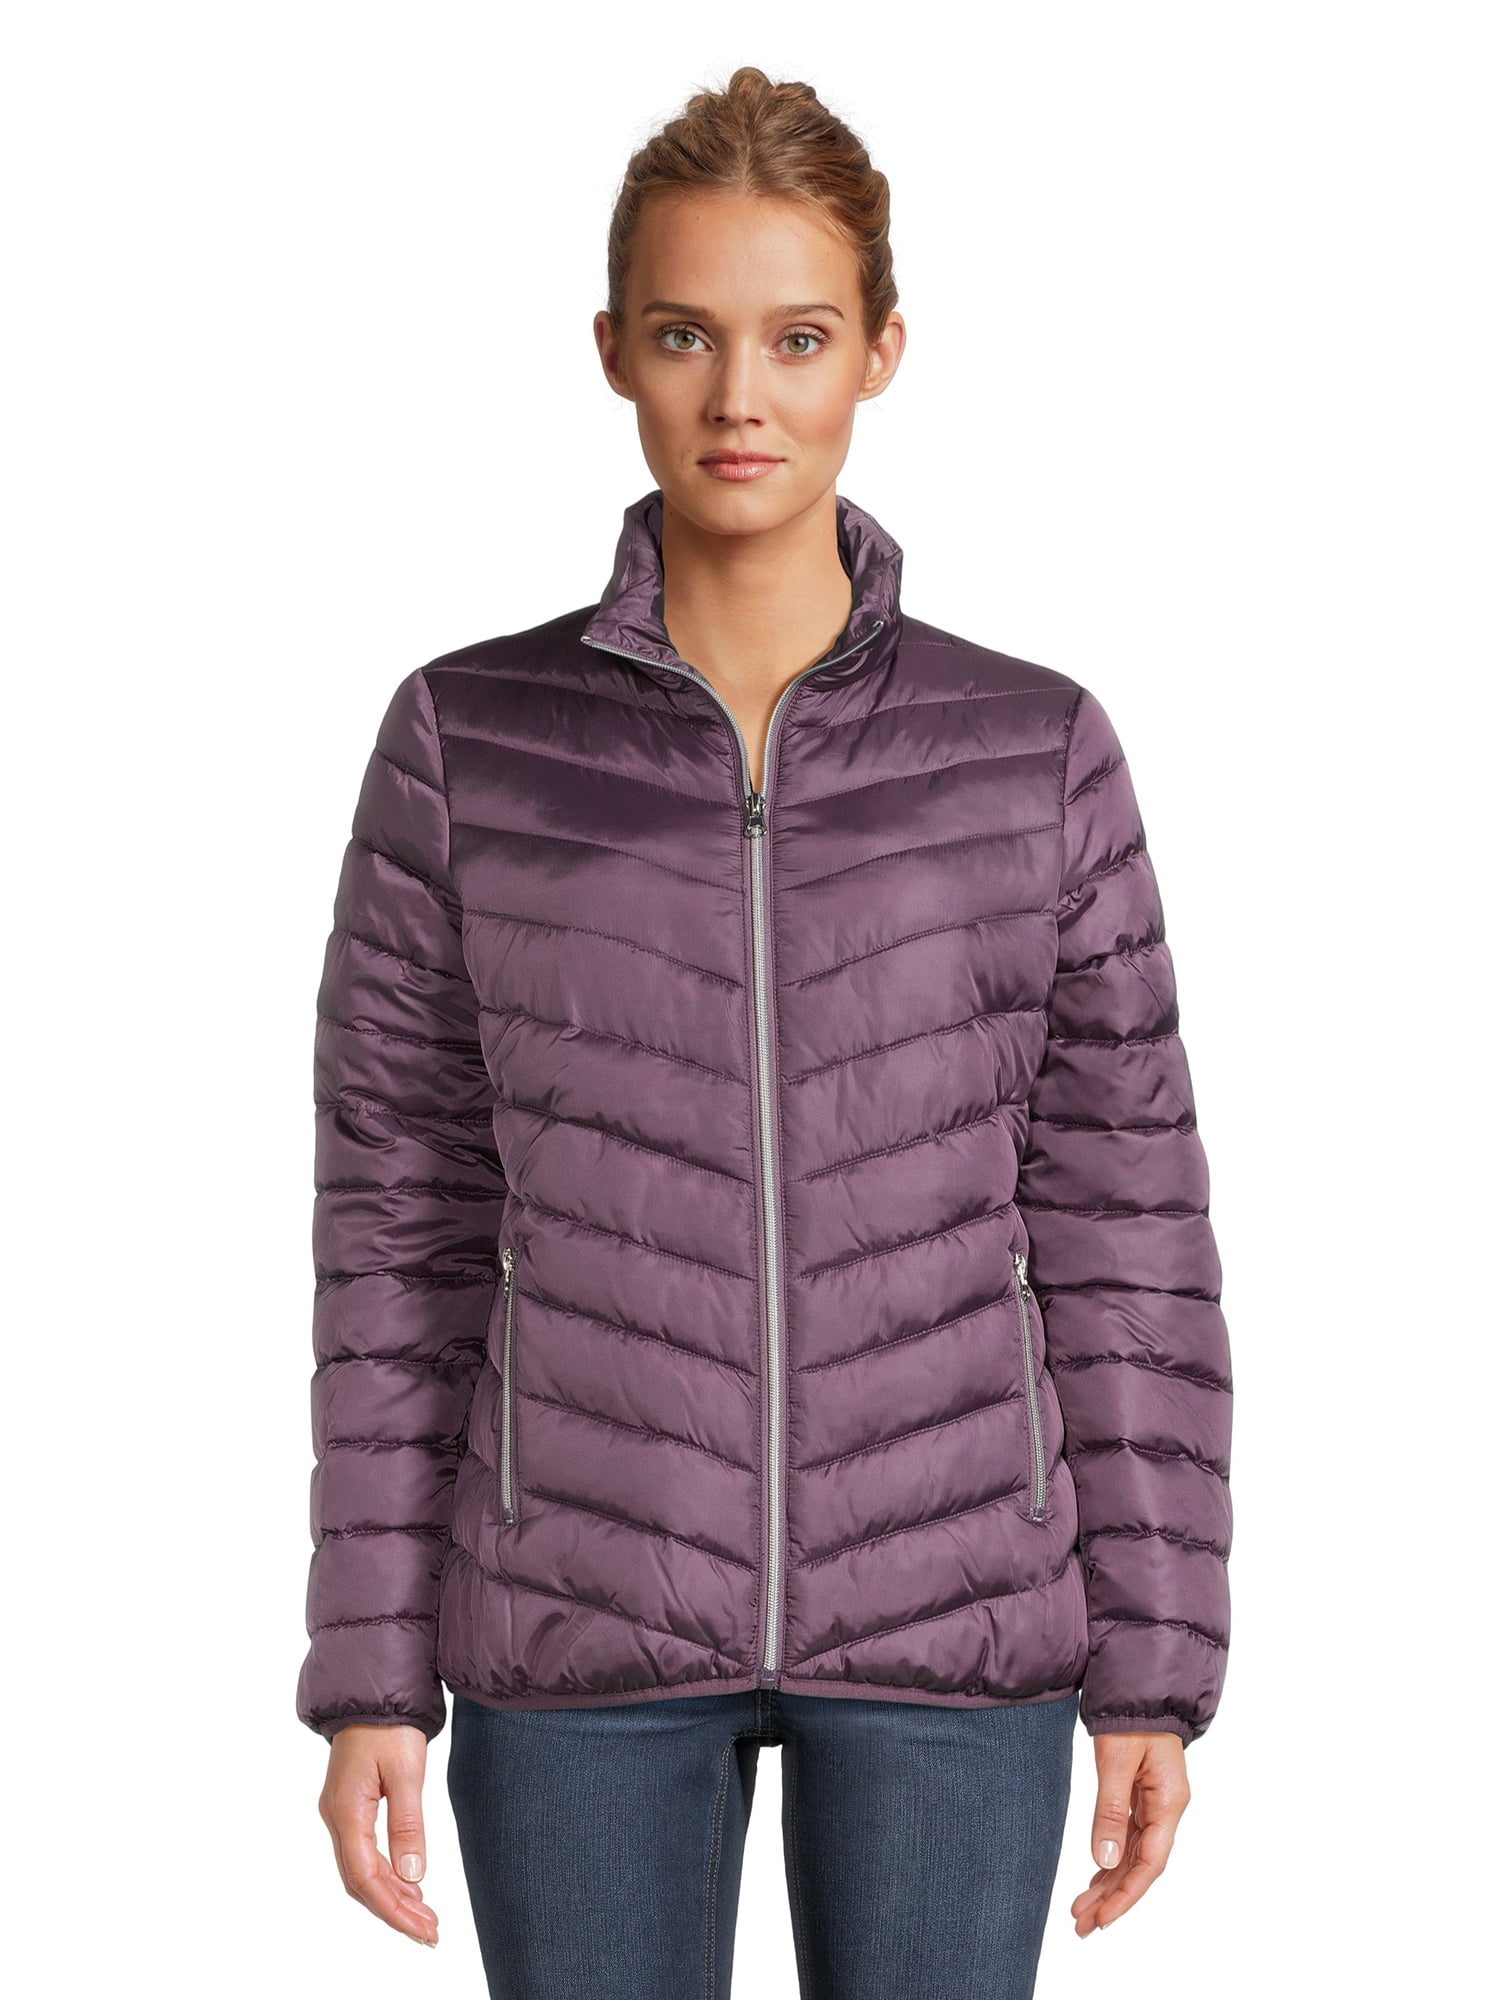 Big Chill Women's Packable Puffer Jacket, Sizes S-XL - Walmart.com